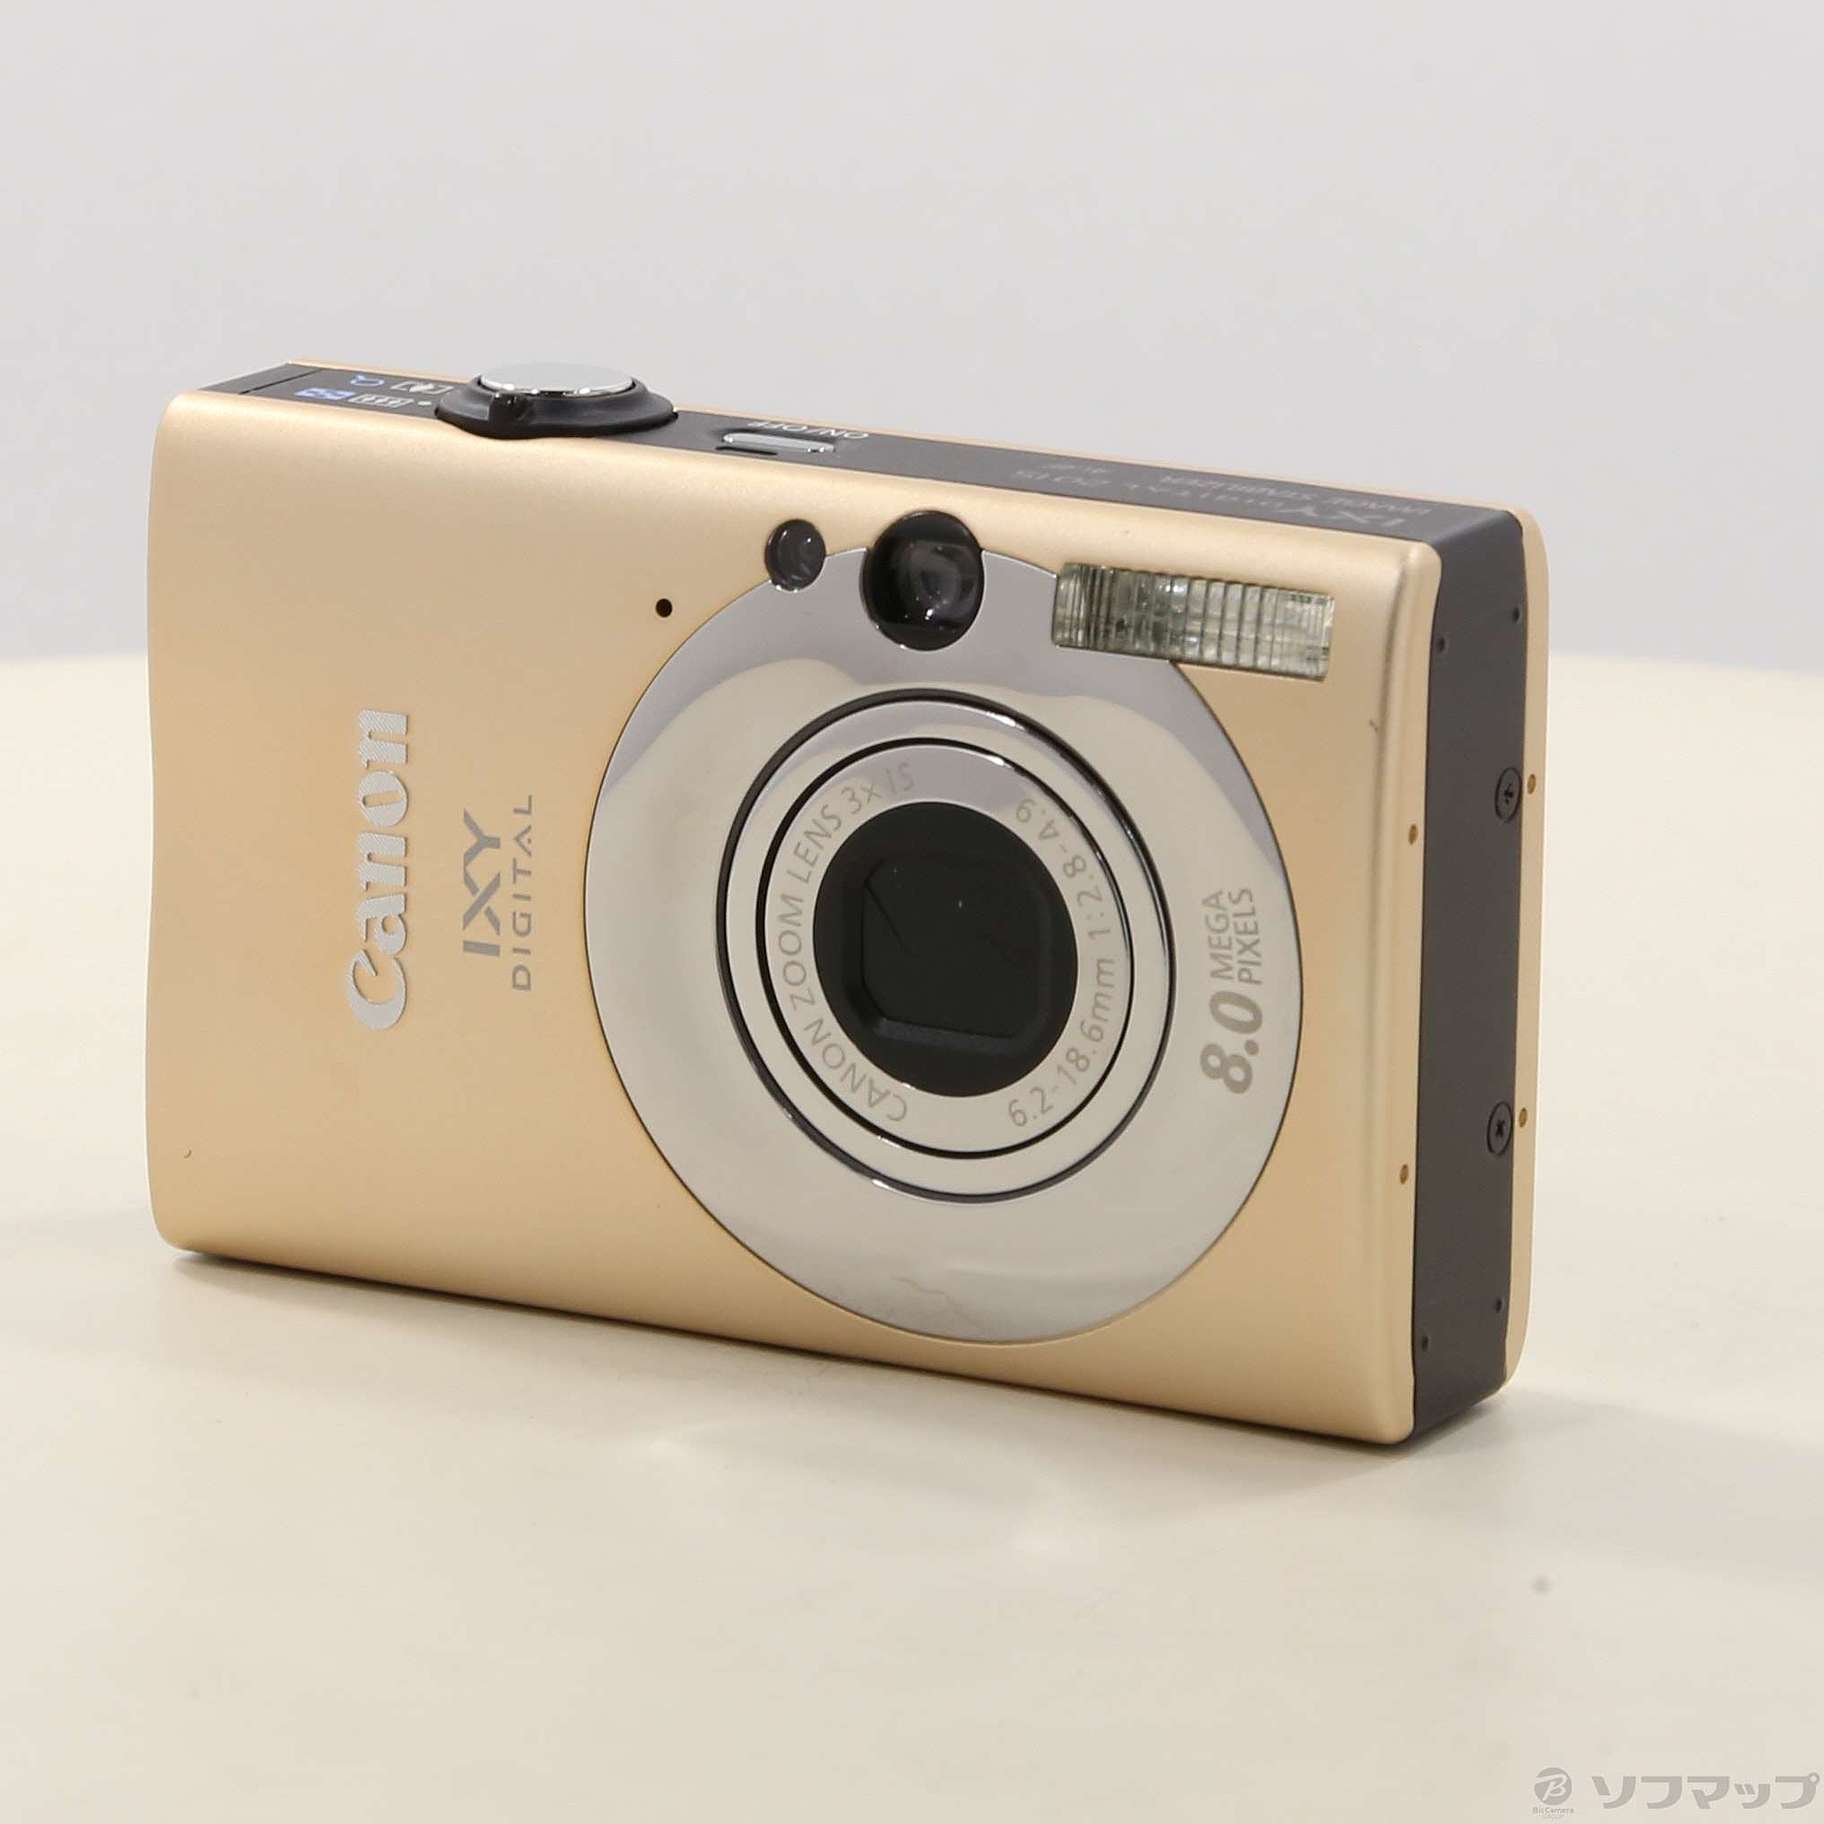 Canon IXY DIGITAL 20is ホワイト - デジタルカメラ